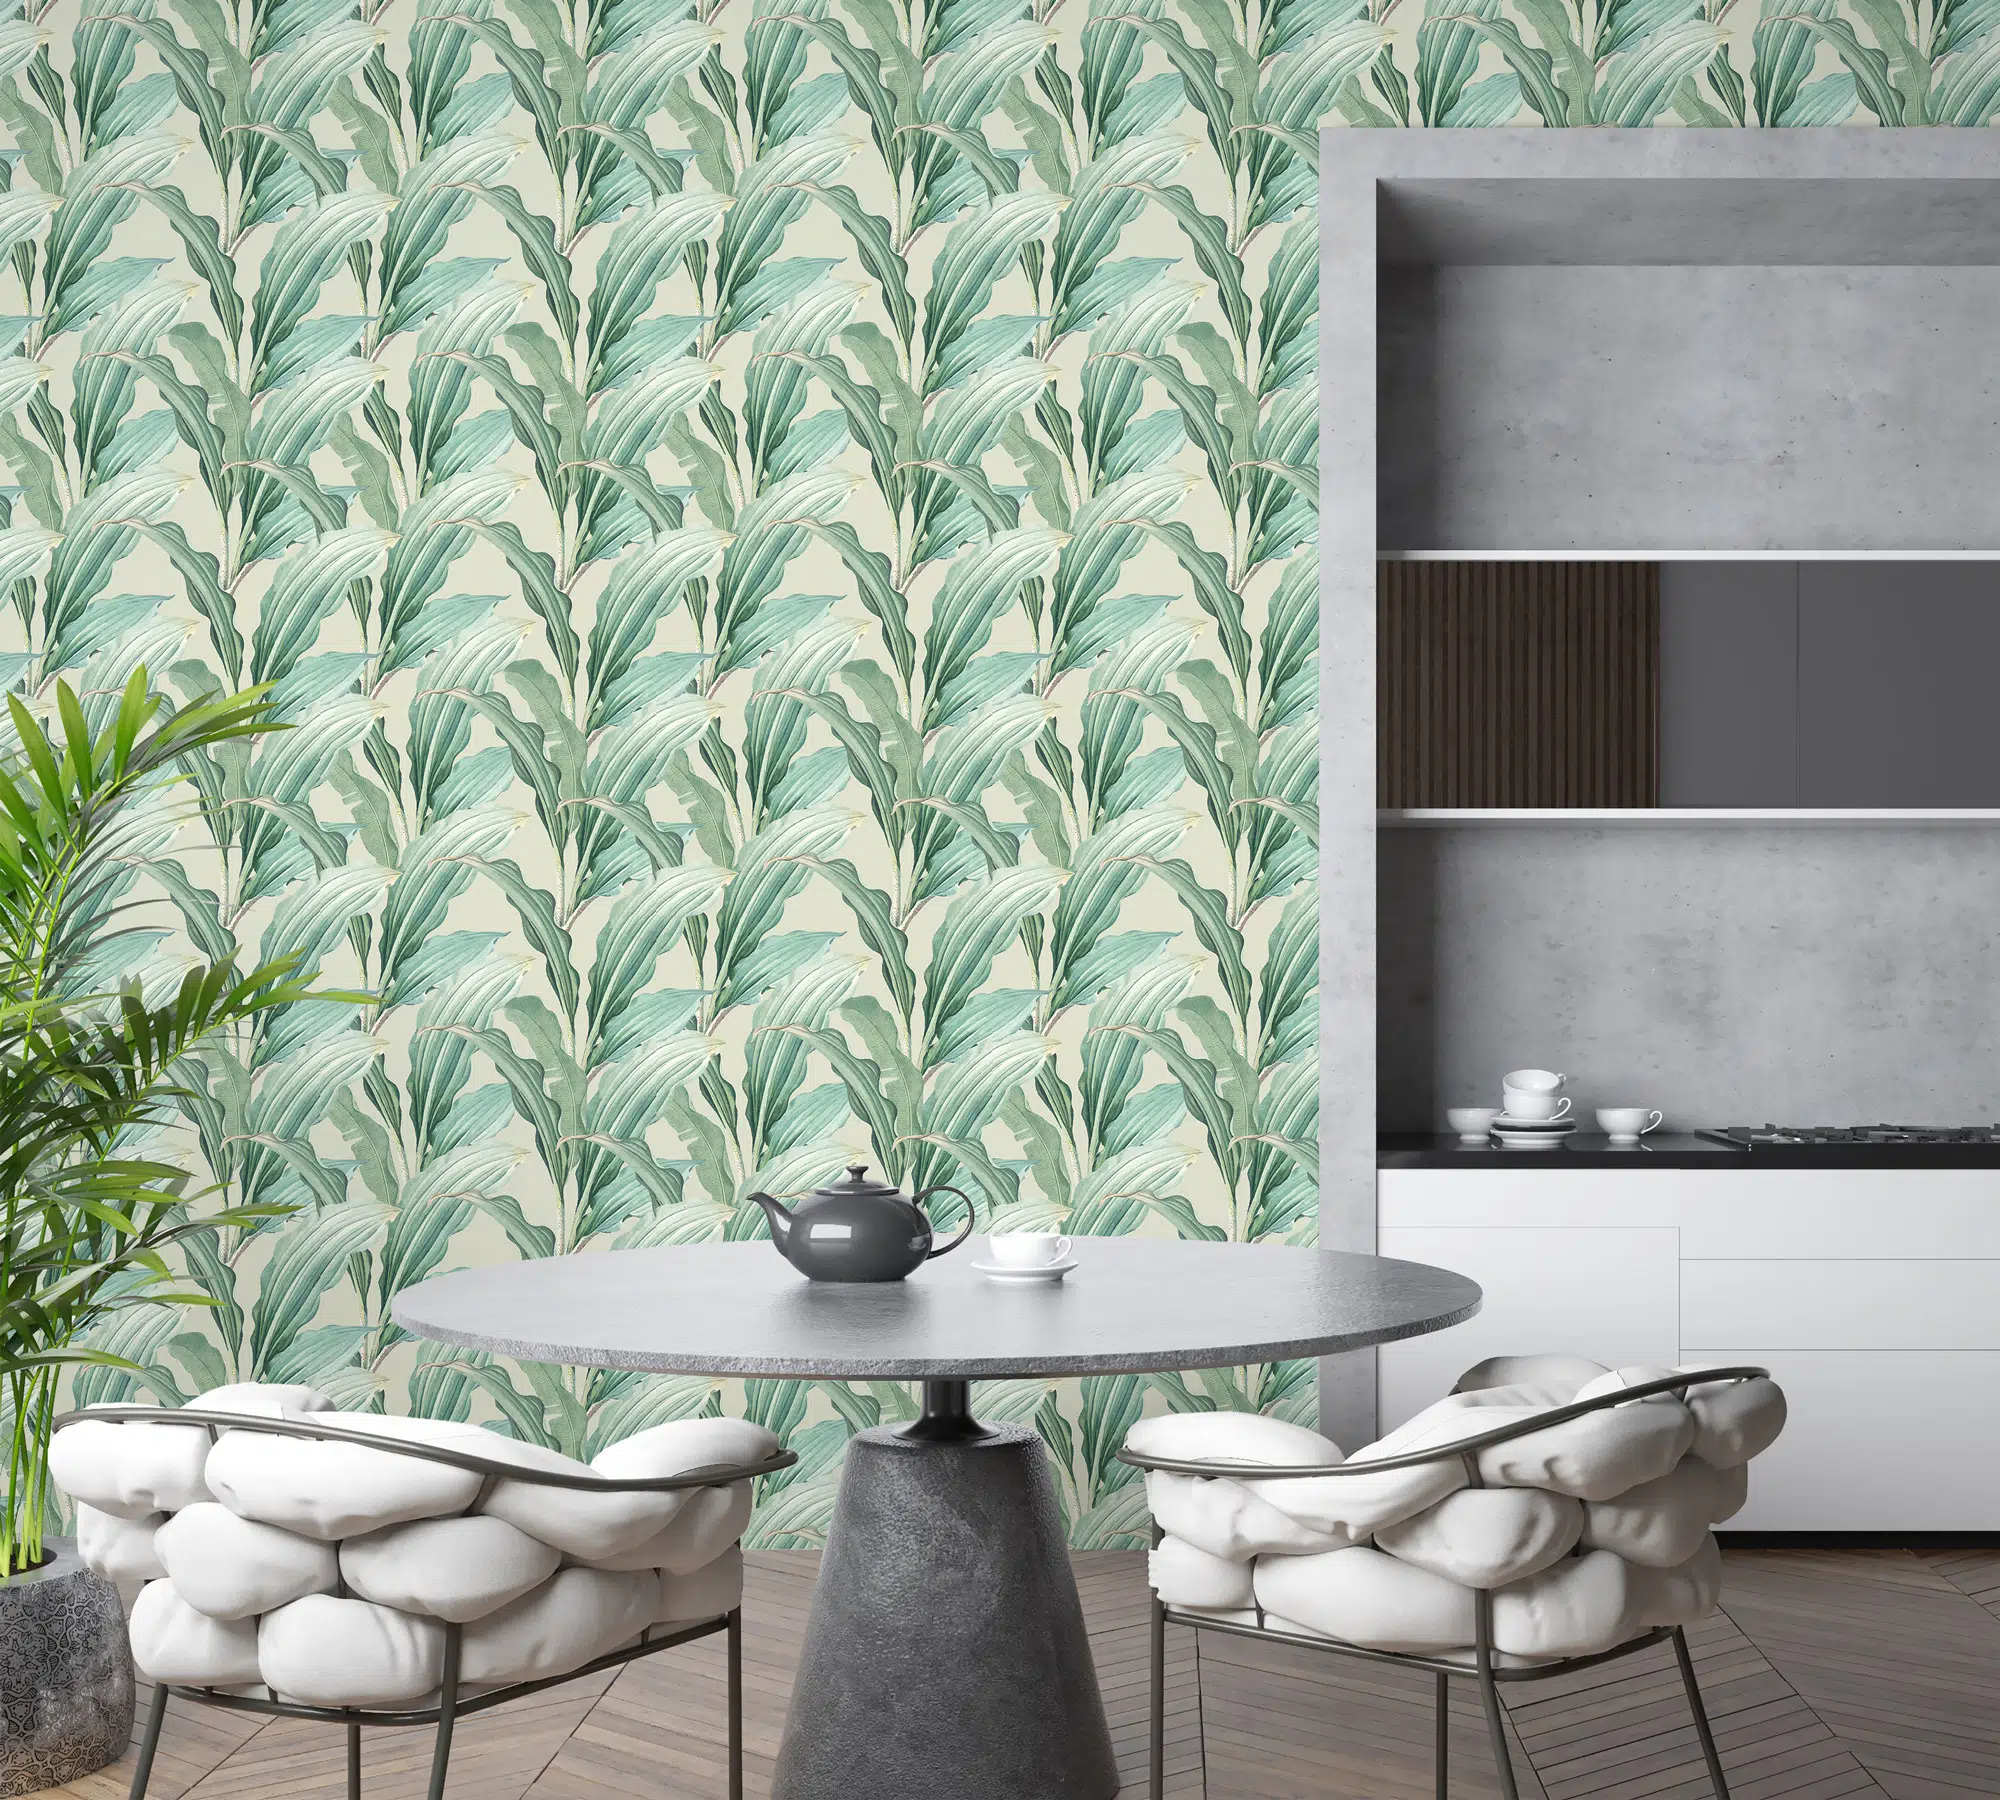 green leaf wallpaper design